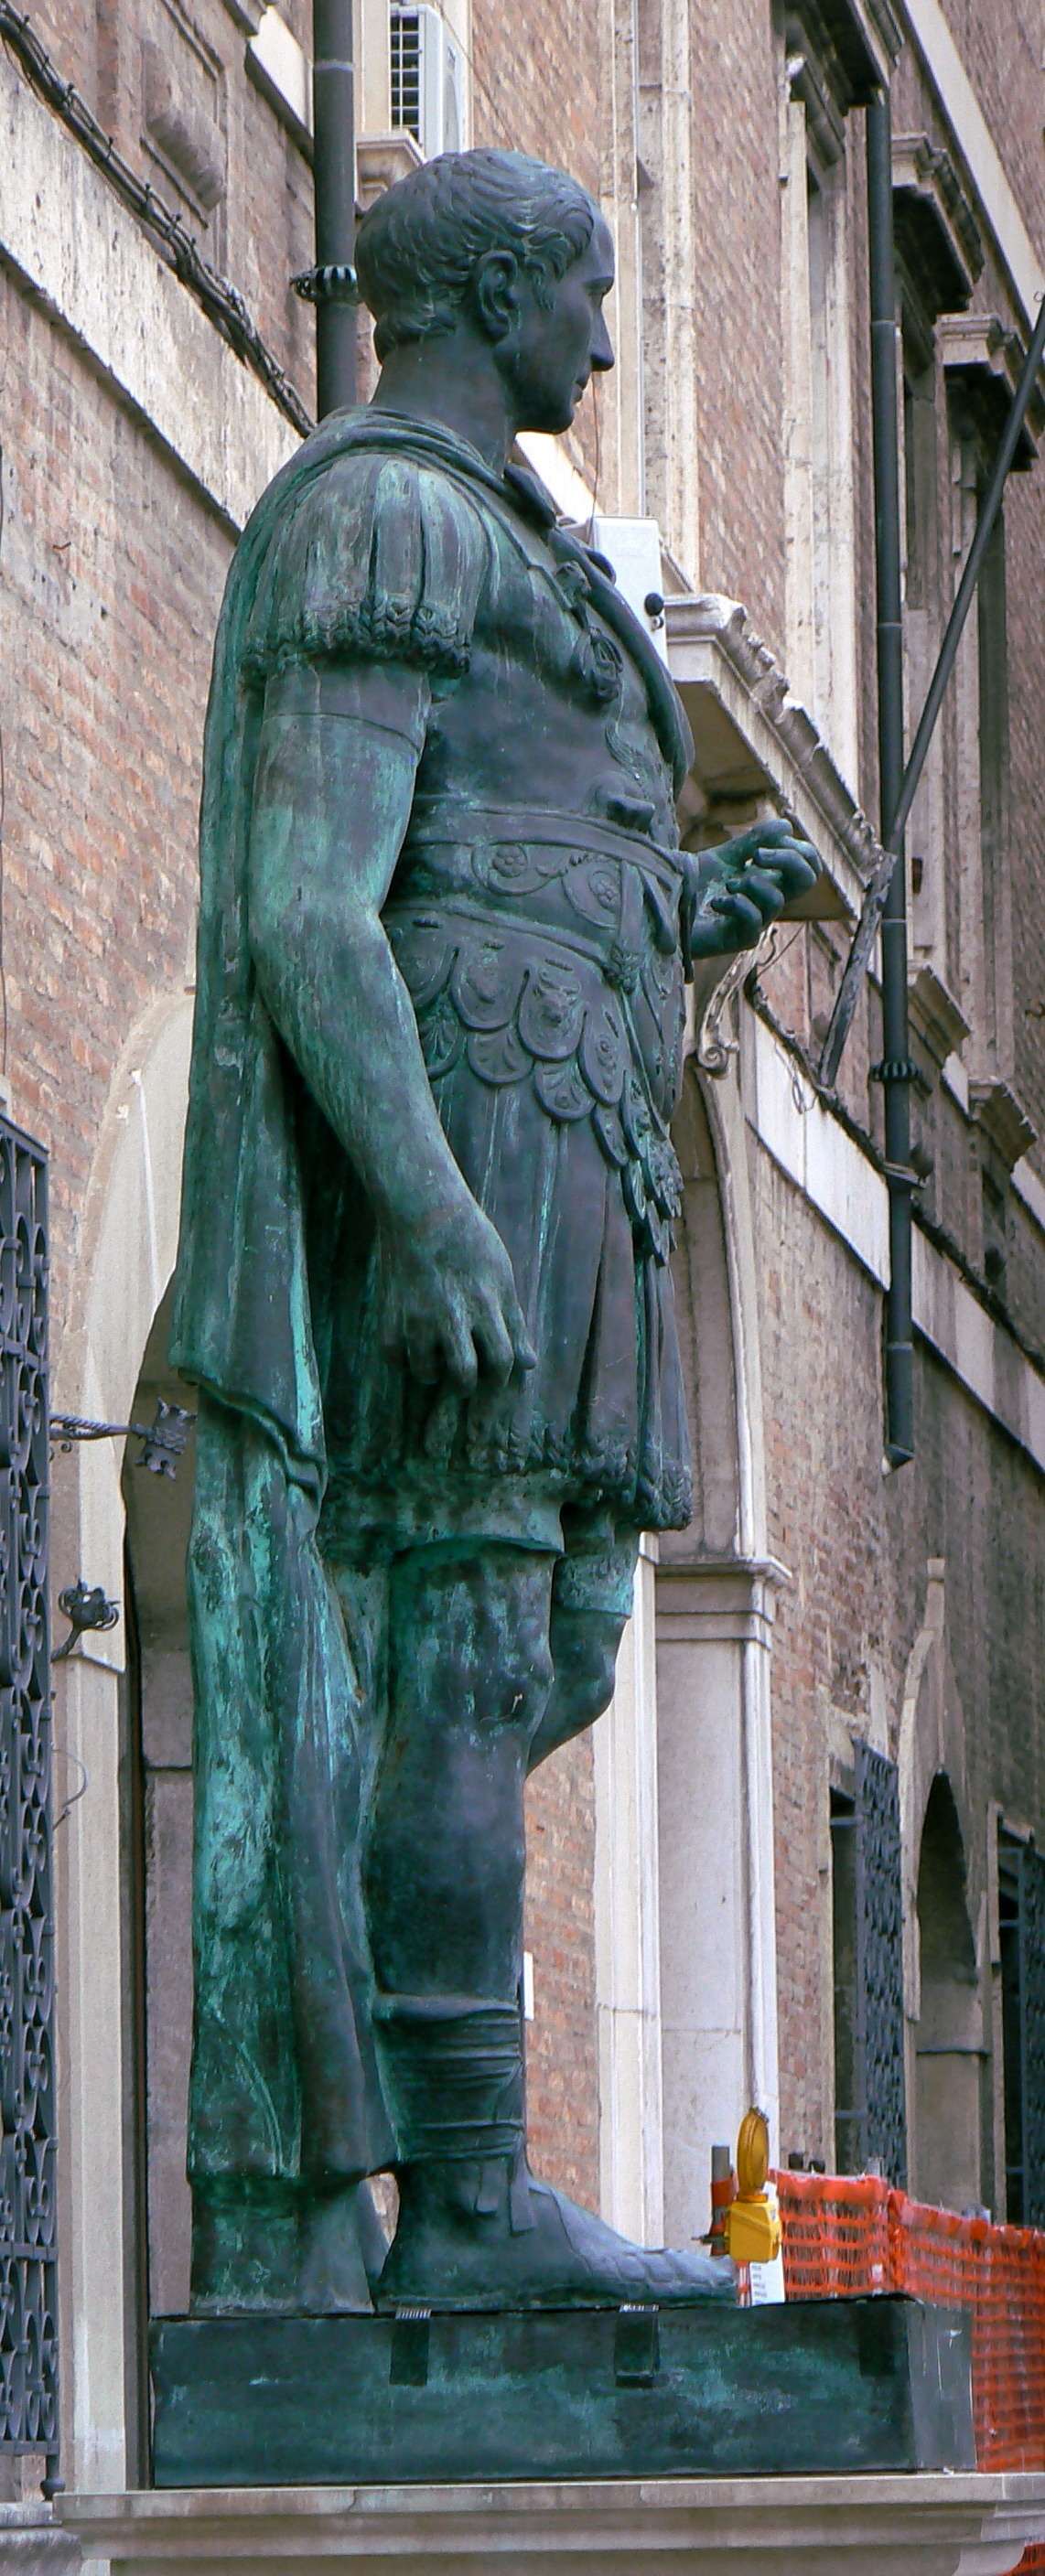 foto: https://upload.wikimedia.org/wikipedia/commons/4/49/Rimini_profilo_statua_di_Giulio_Cesare_1.jpg